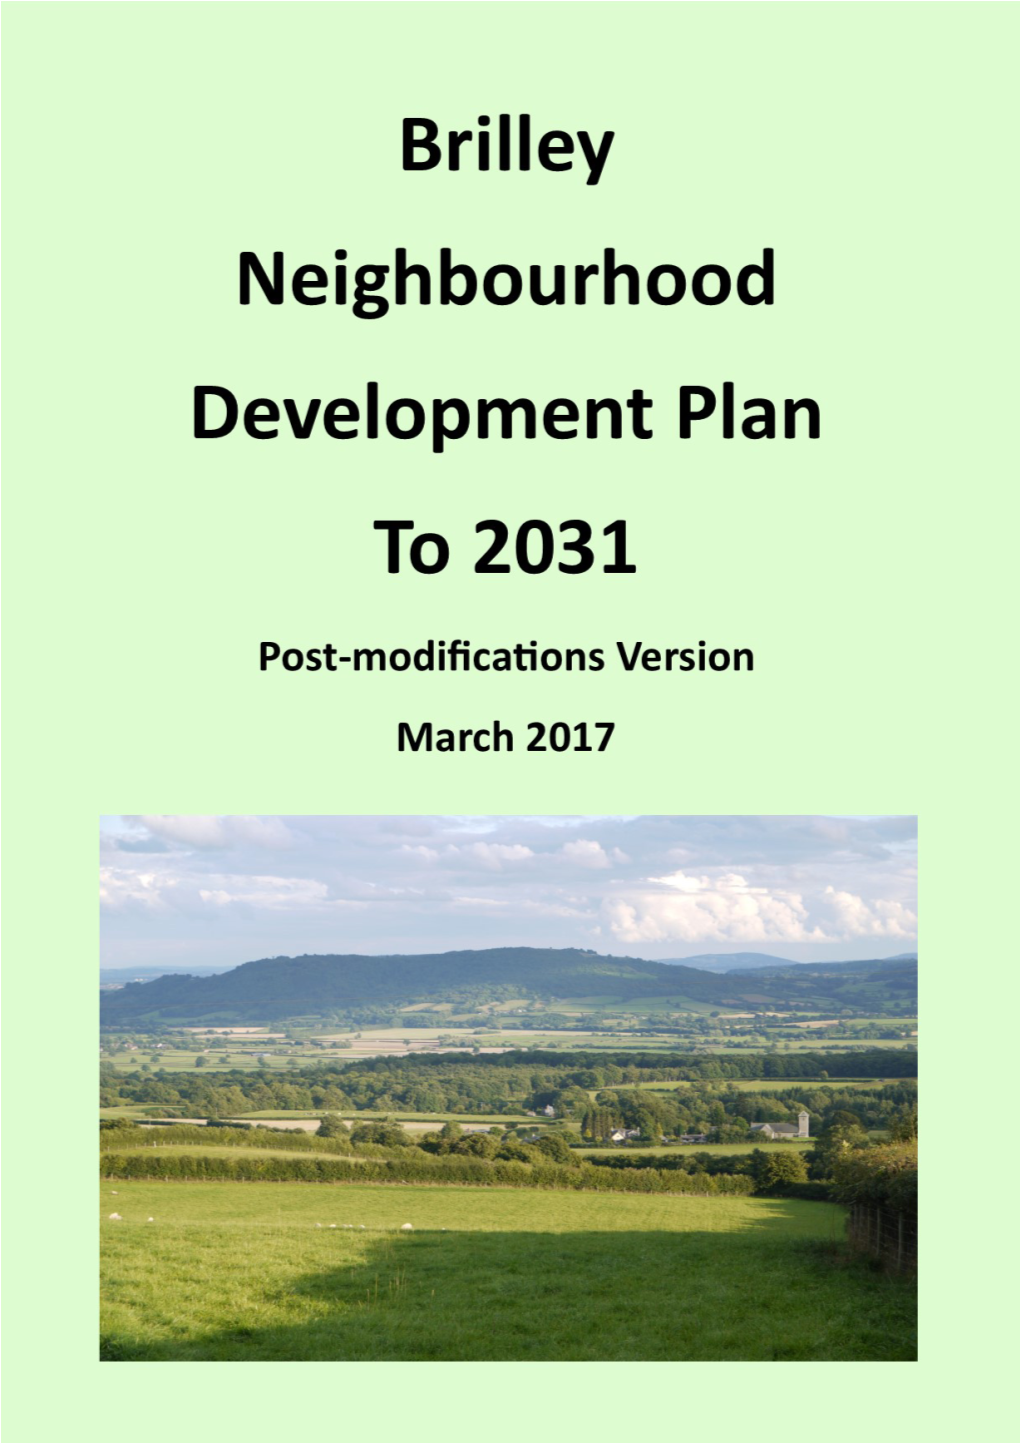 Brilley Neighbourhood Development Plan Policies